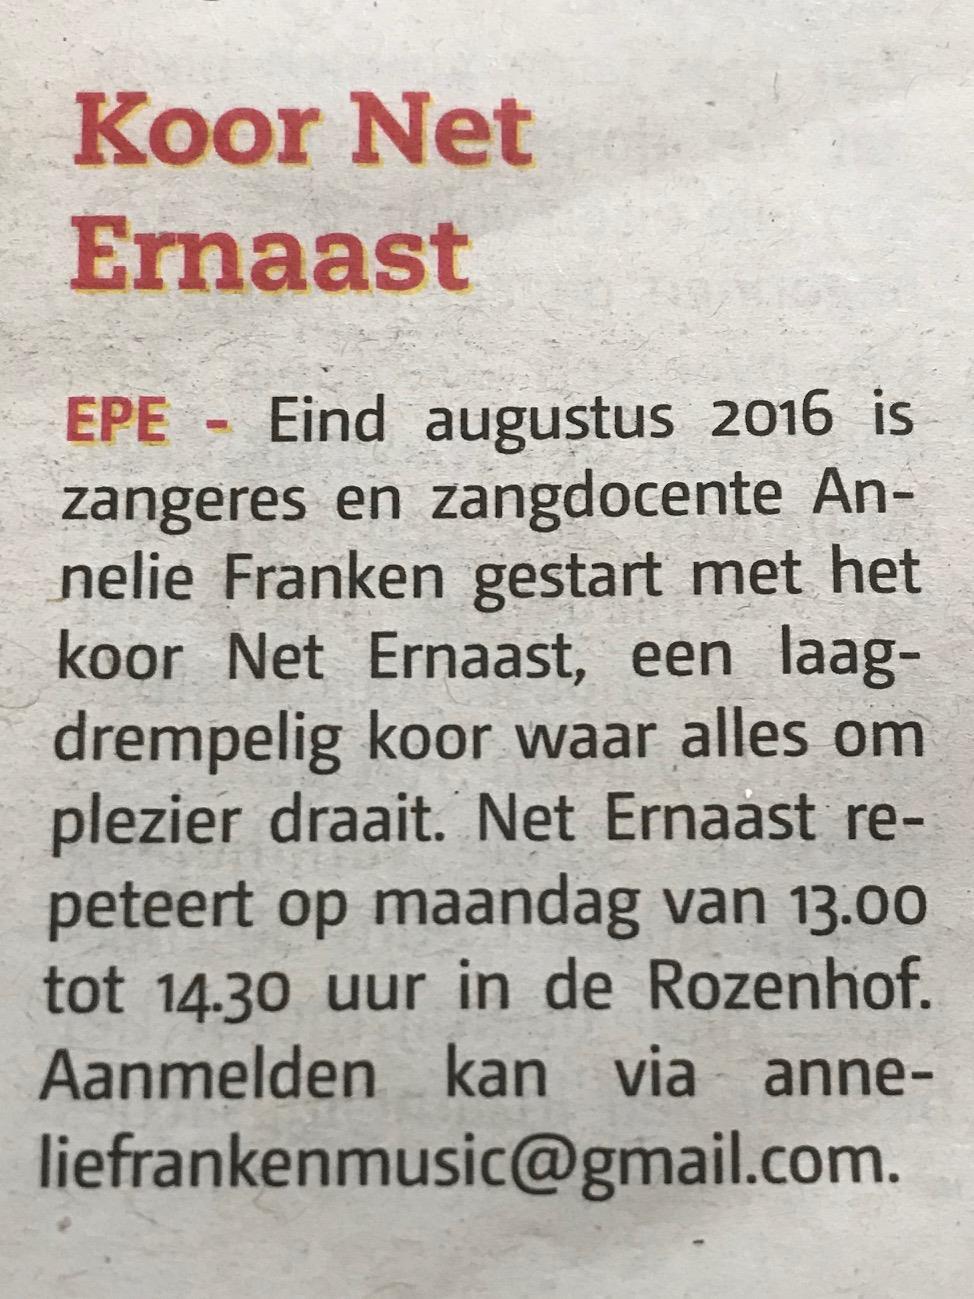 Net Ernaast Jan Eshuis Voorjaar 2019 zullen naar verwachting weer de he raudities plaatsvinden.